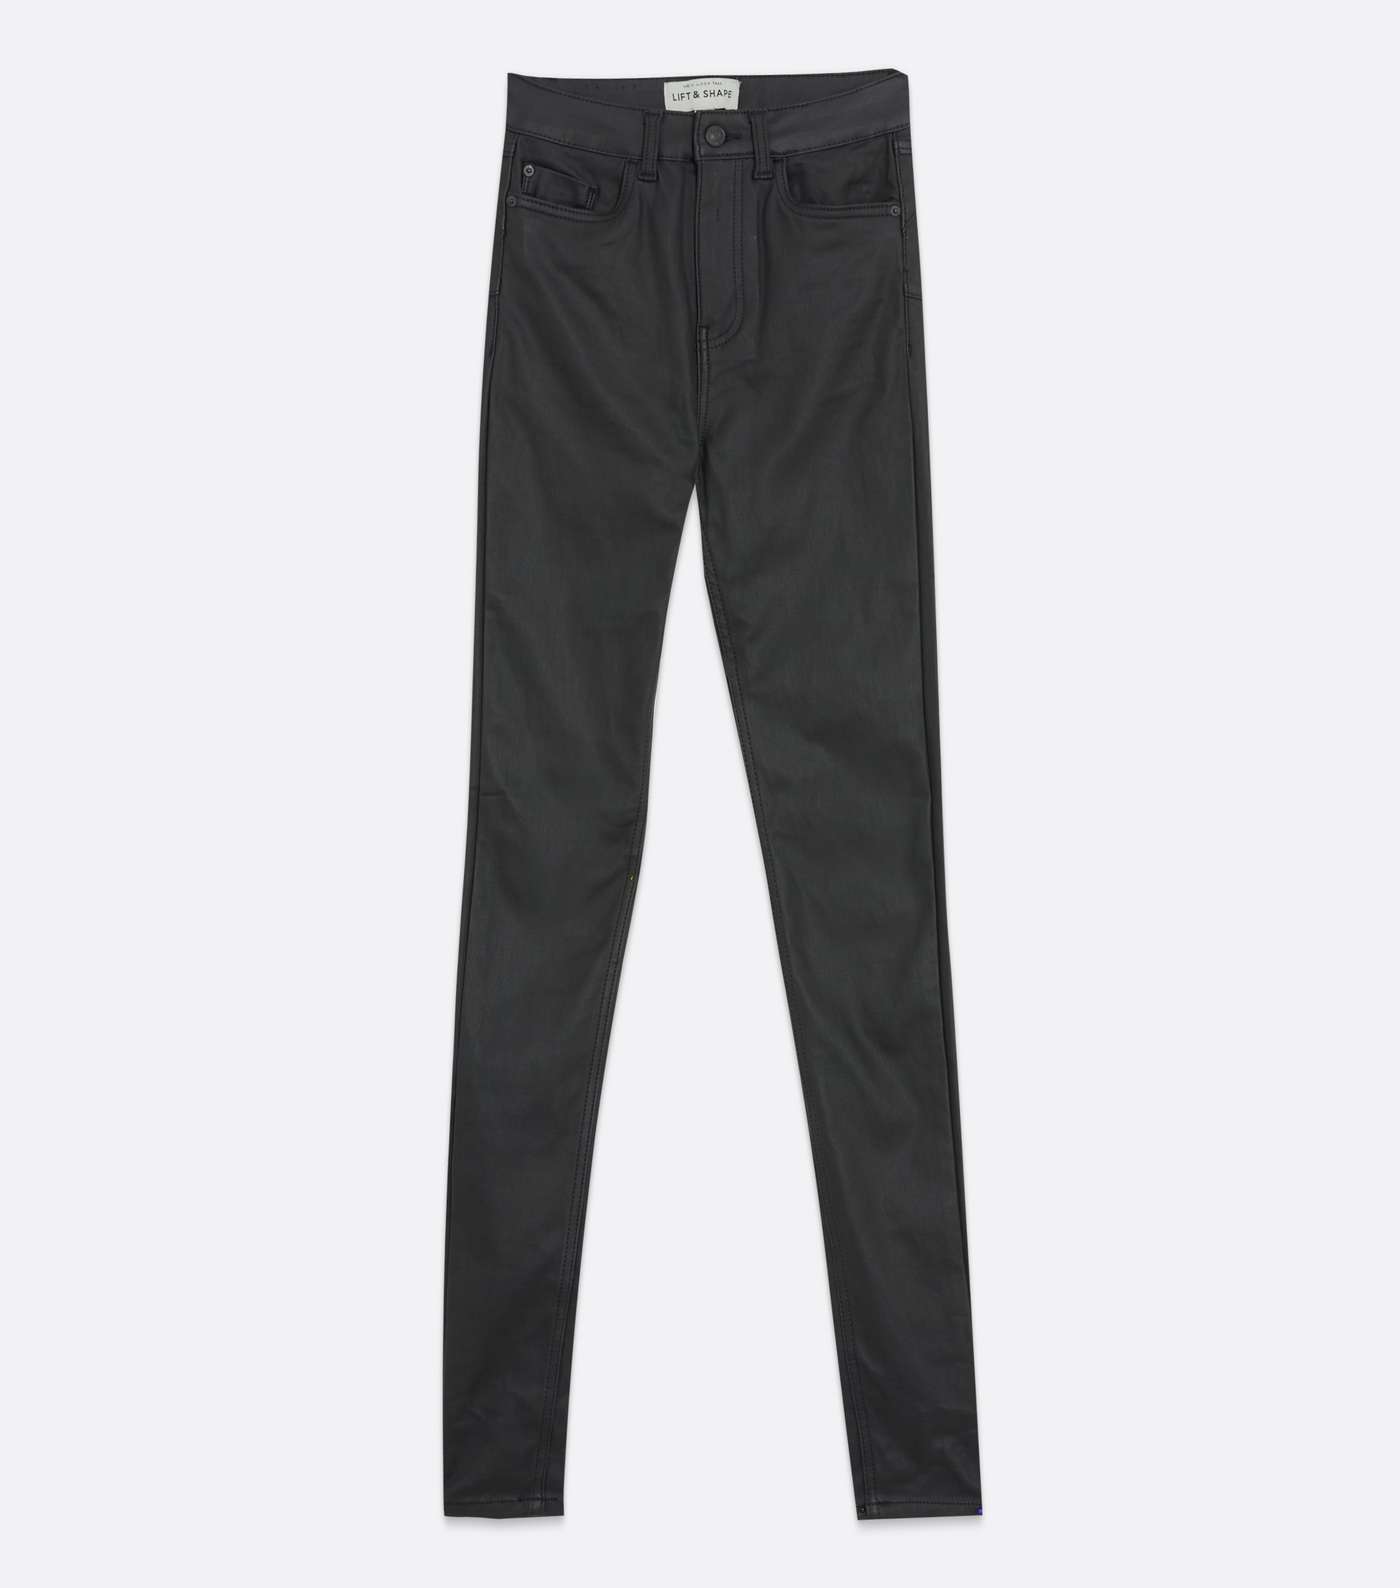 Tall Black Leather-Look High Waist Hallie Super Skinny Jeans Image 5